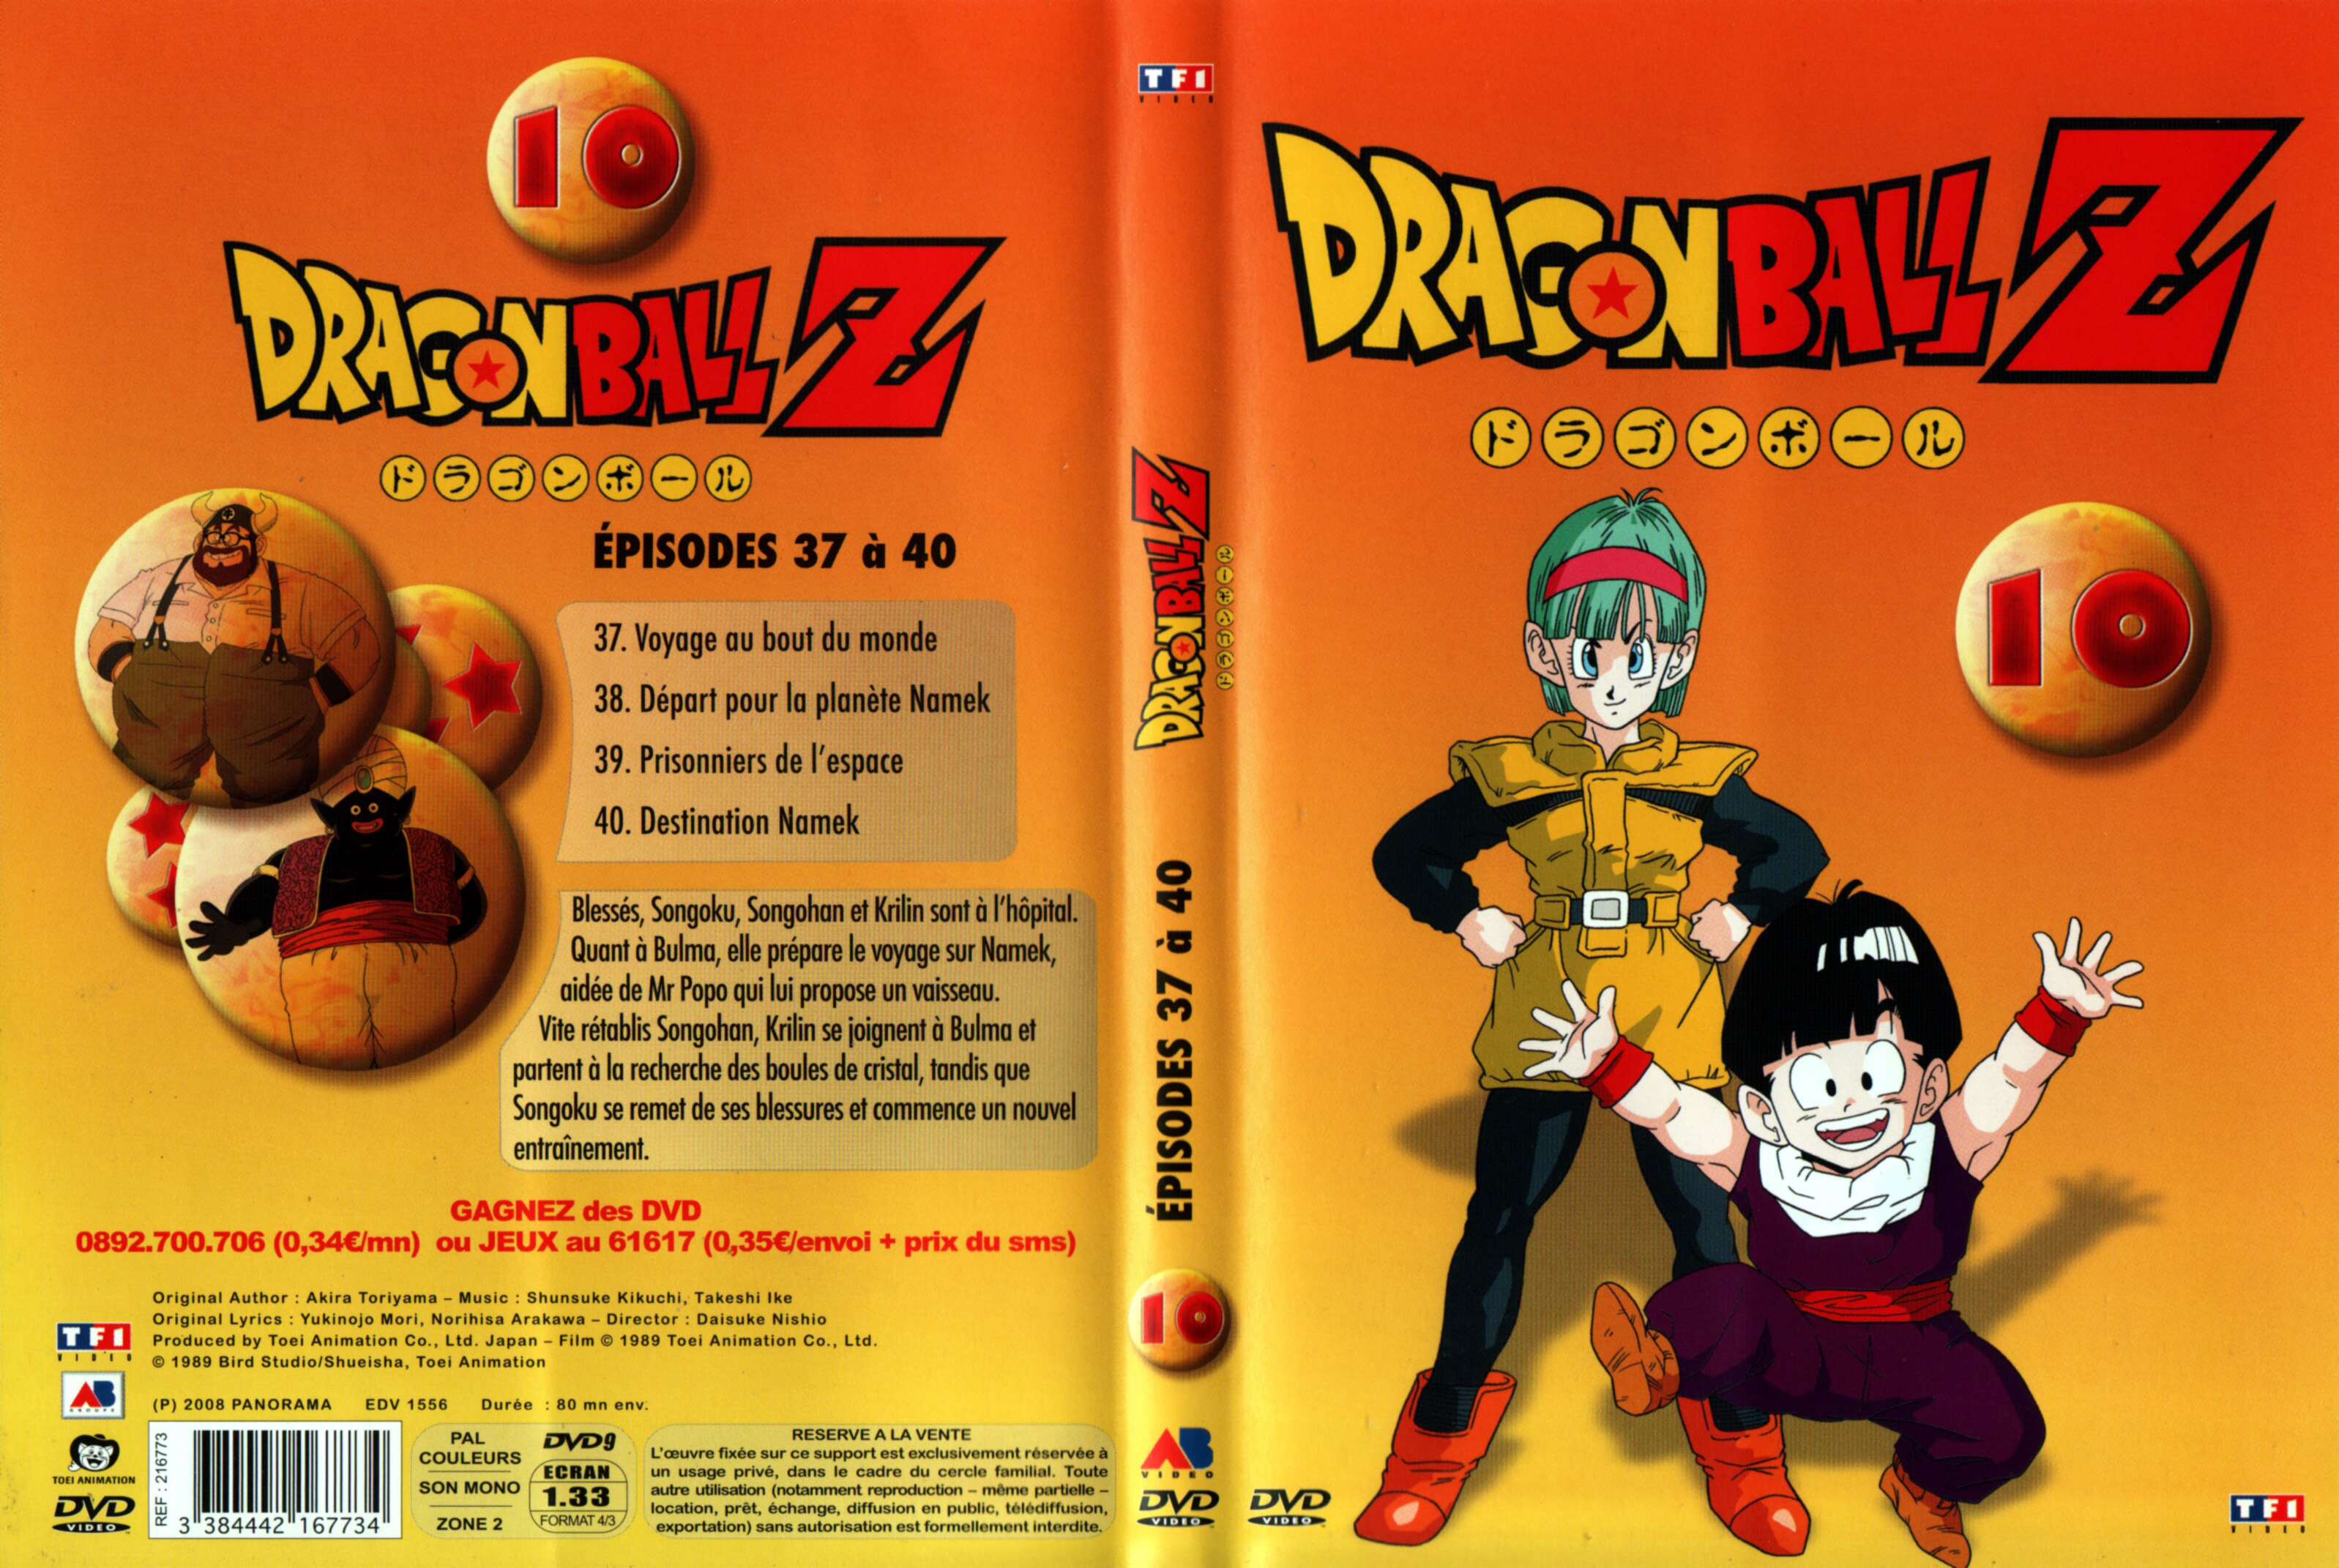 Jaquette DVD Dragon Ball Z vol 10 v2